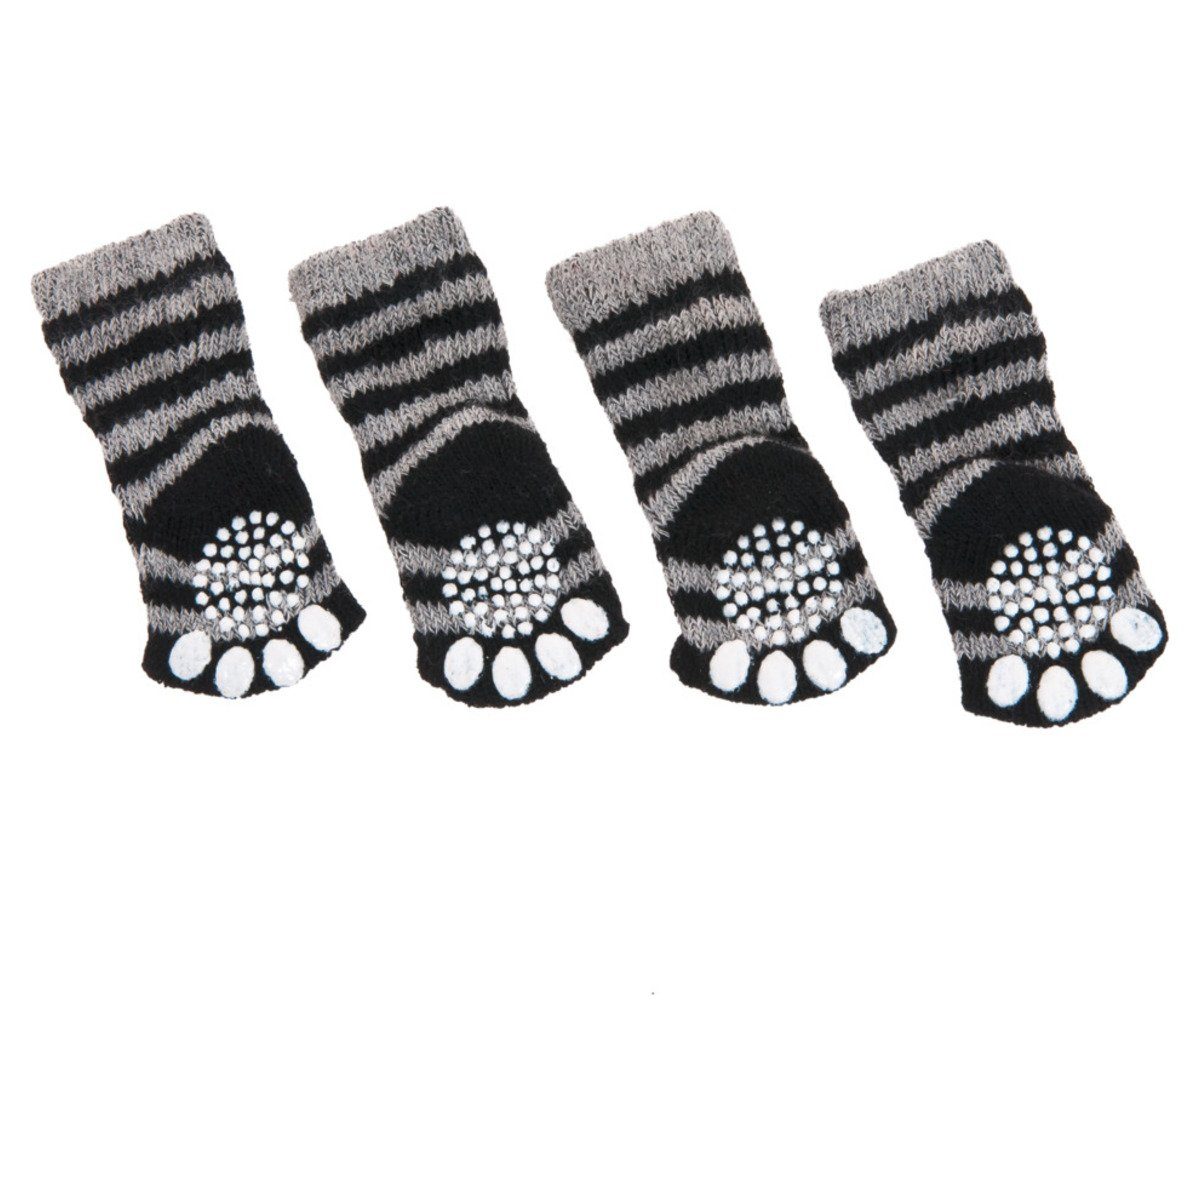 Karlie Hundekostüm Doggy Socks schwarz-grau